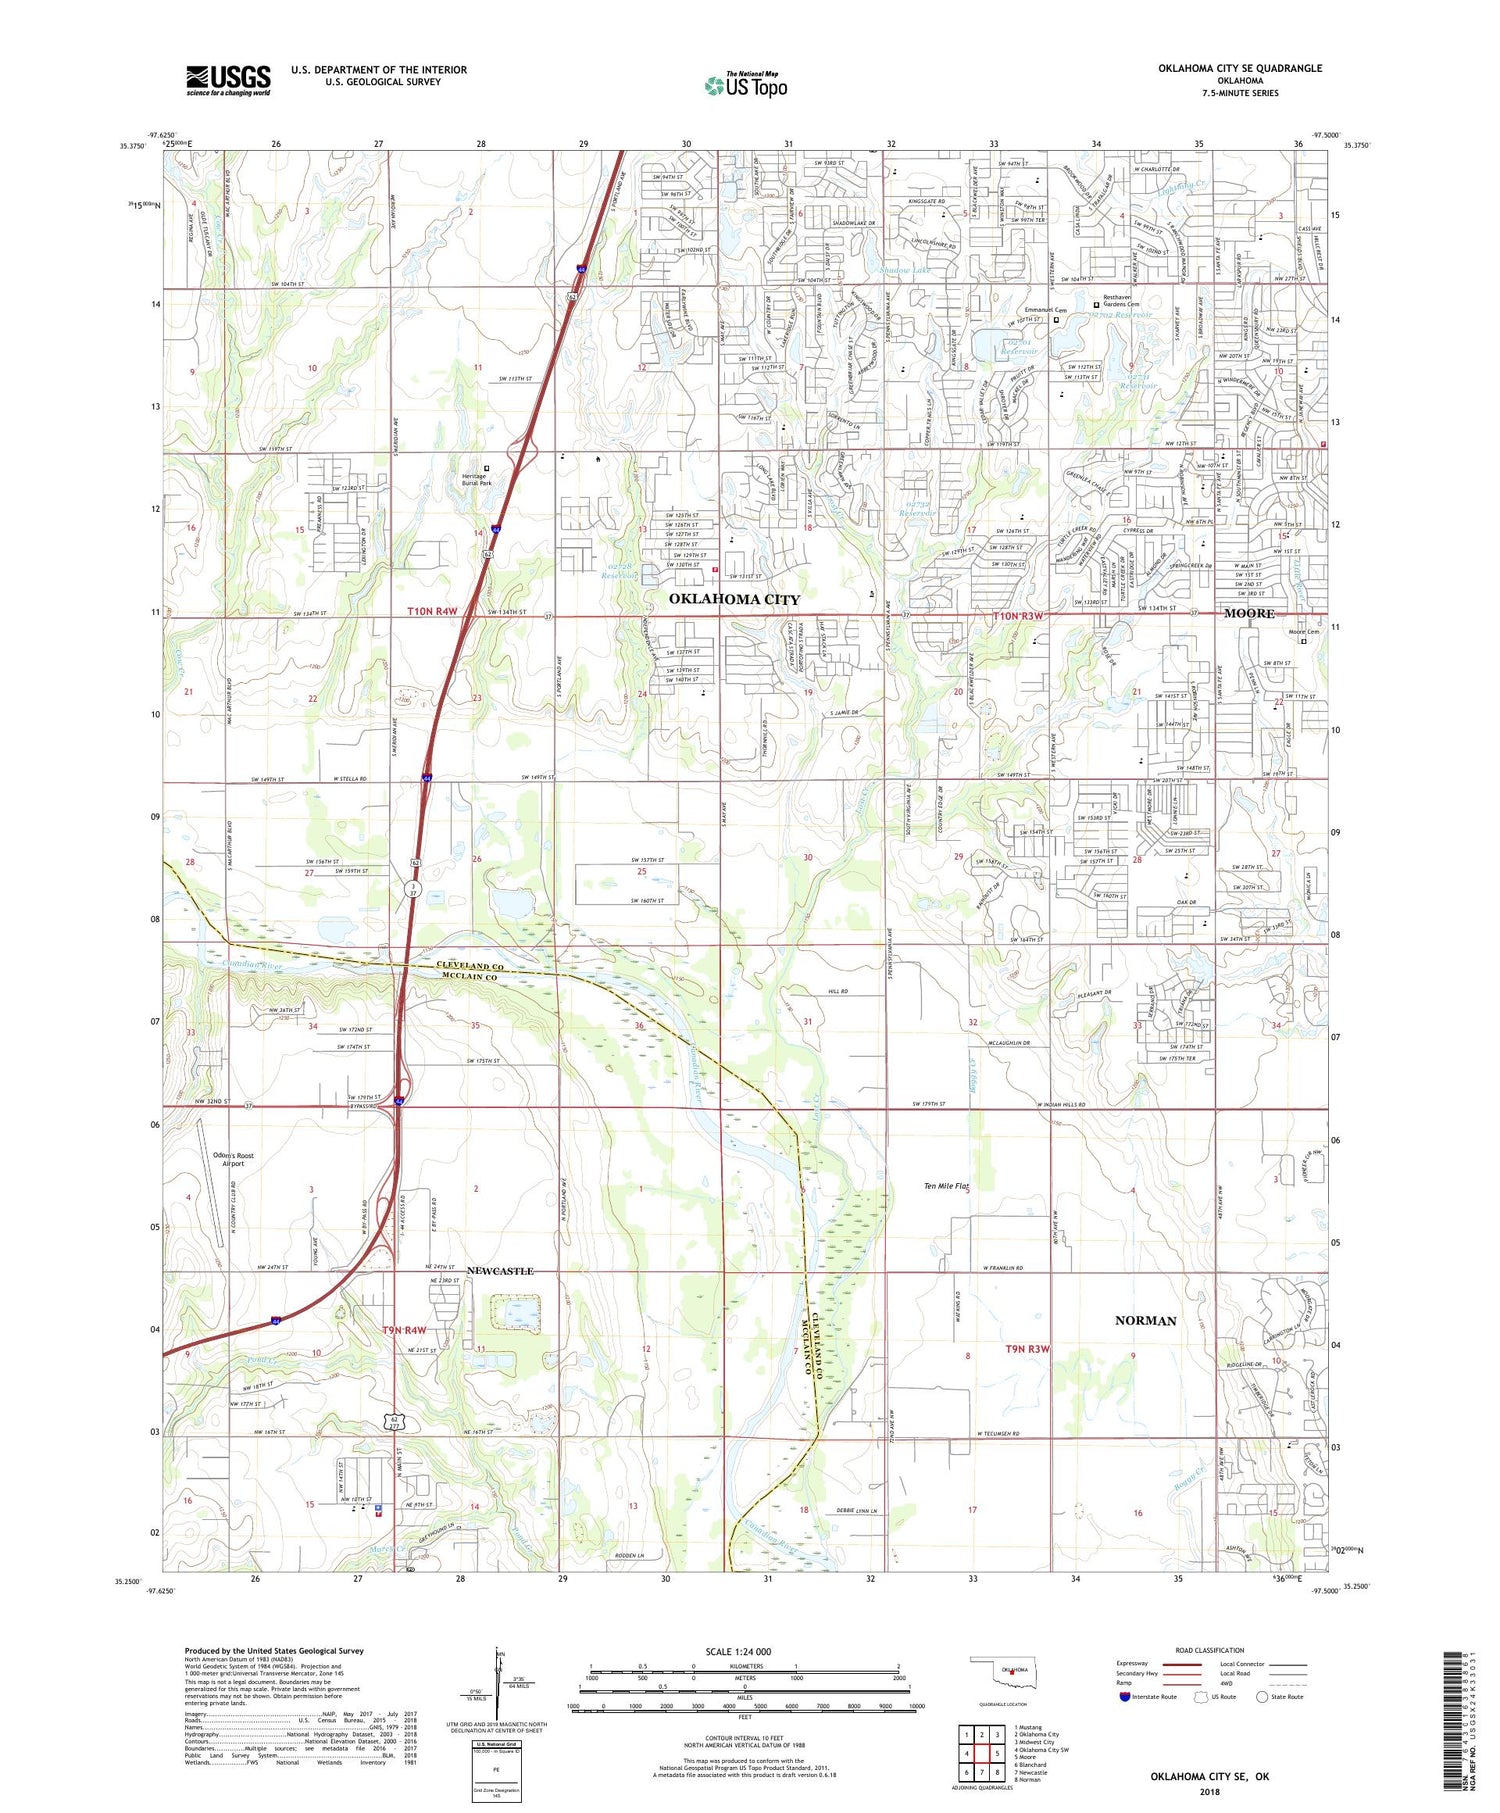 Oklahoma City SE Oklahoma US Topo Map Image